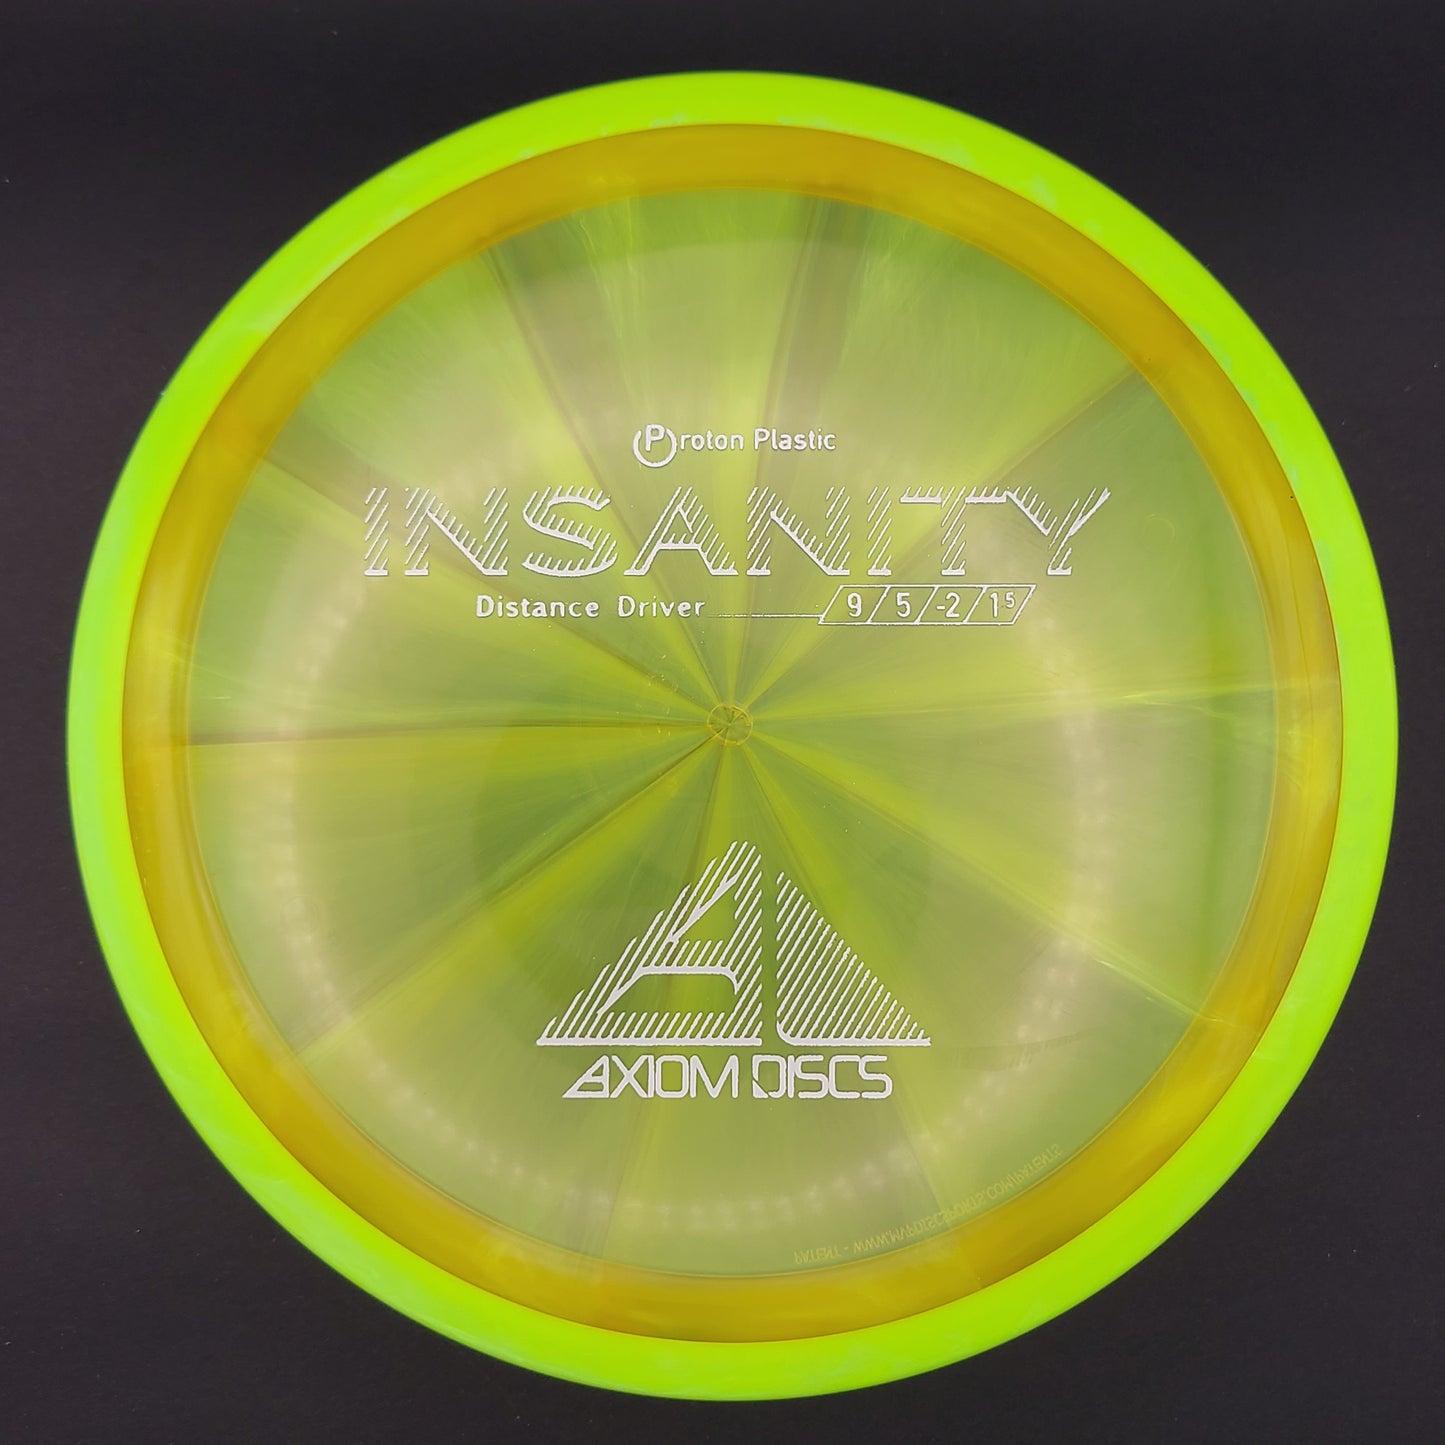 Axiom - Insanity - Proton